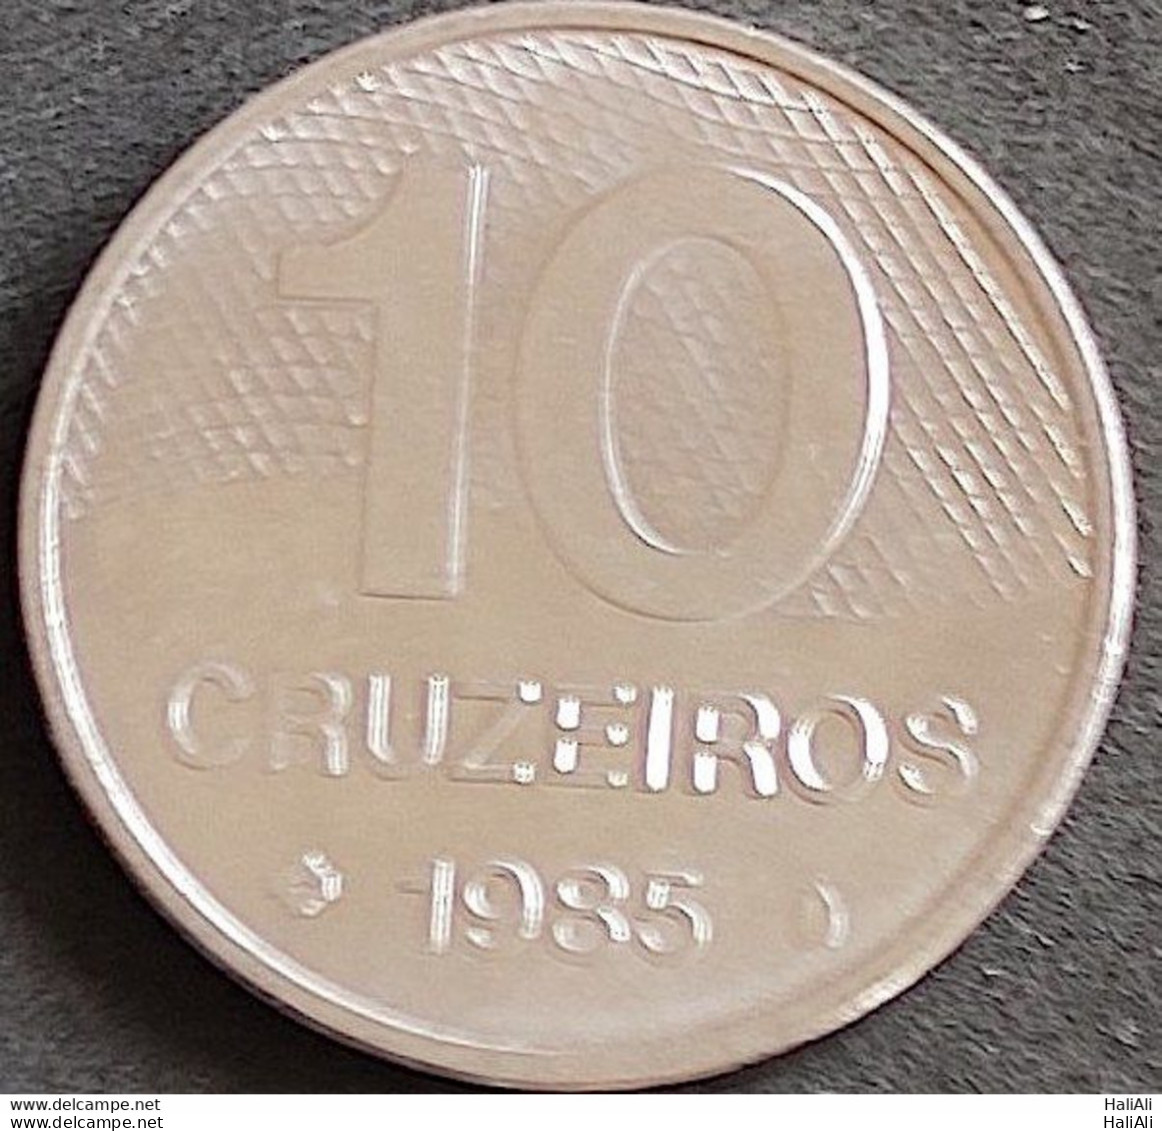 Coin Brazil Moeda Brasil 1985 10 Cruzeiros 1 - Brasil